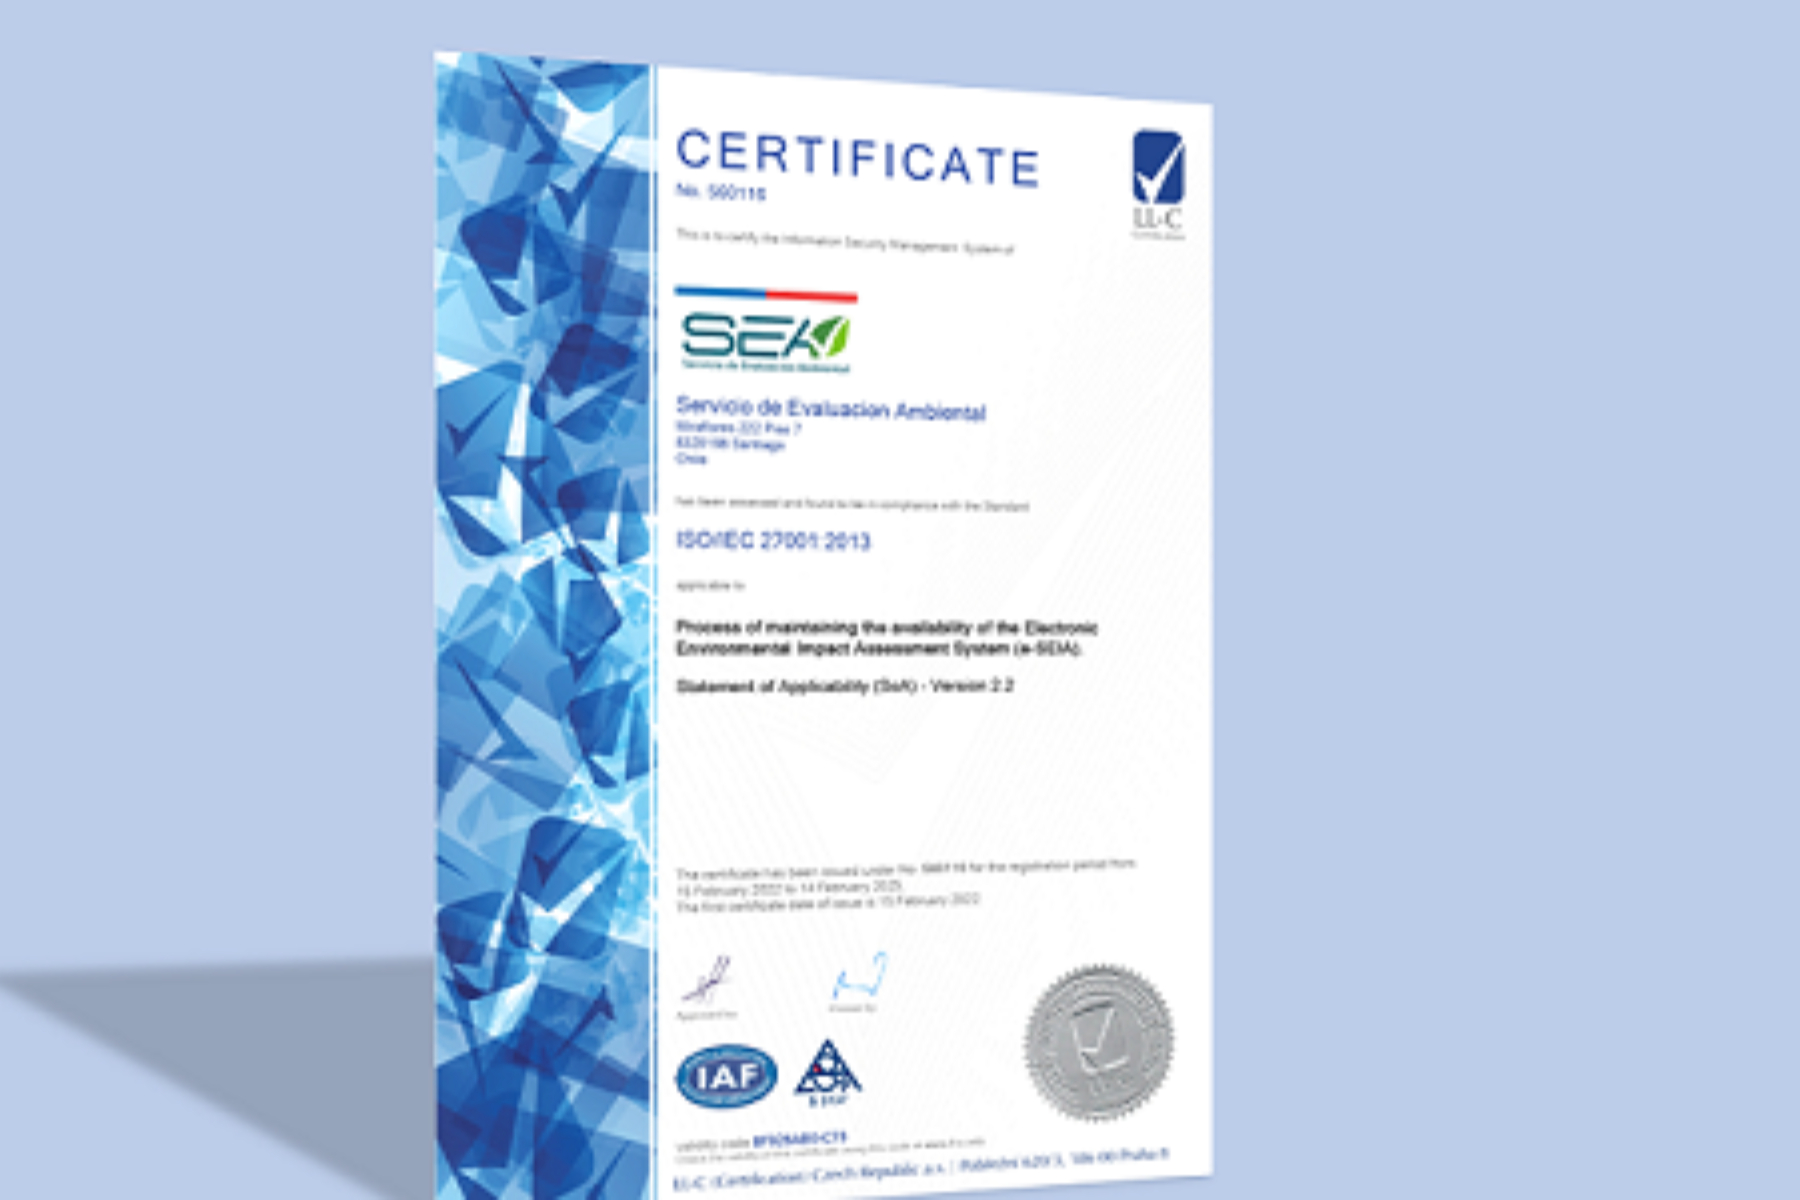 SEA realiza auditoría a certificación ISO 27.001 para su Sistema de Gestión de Seguridad de la Información